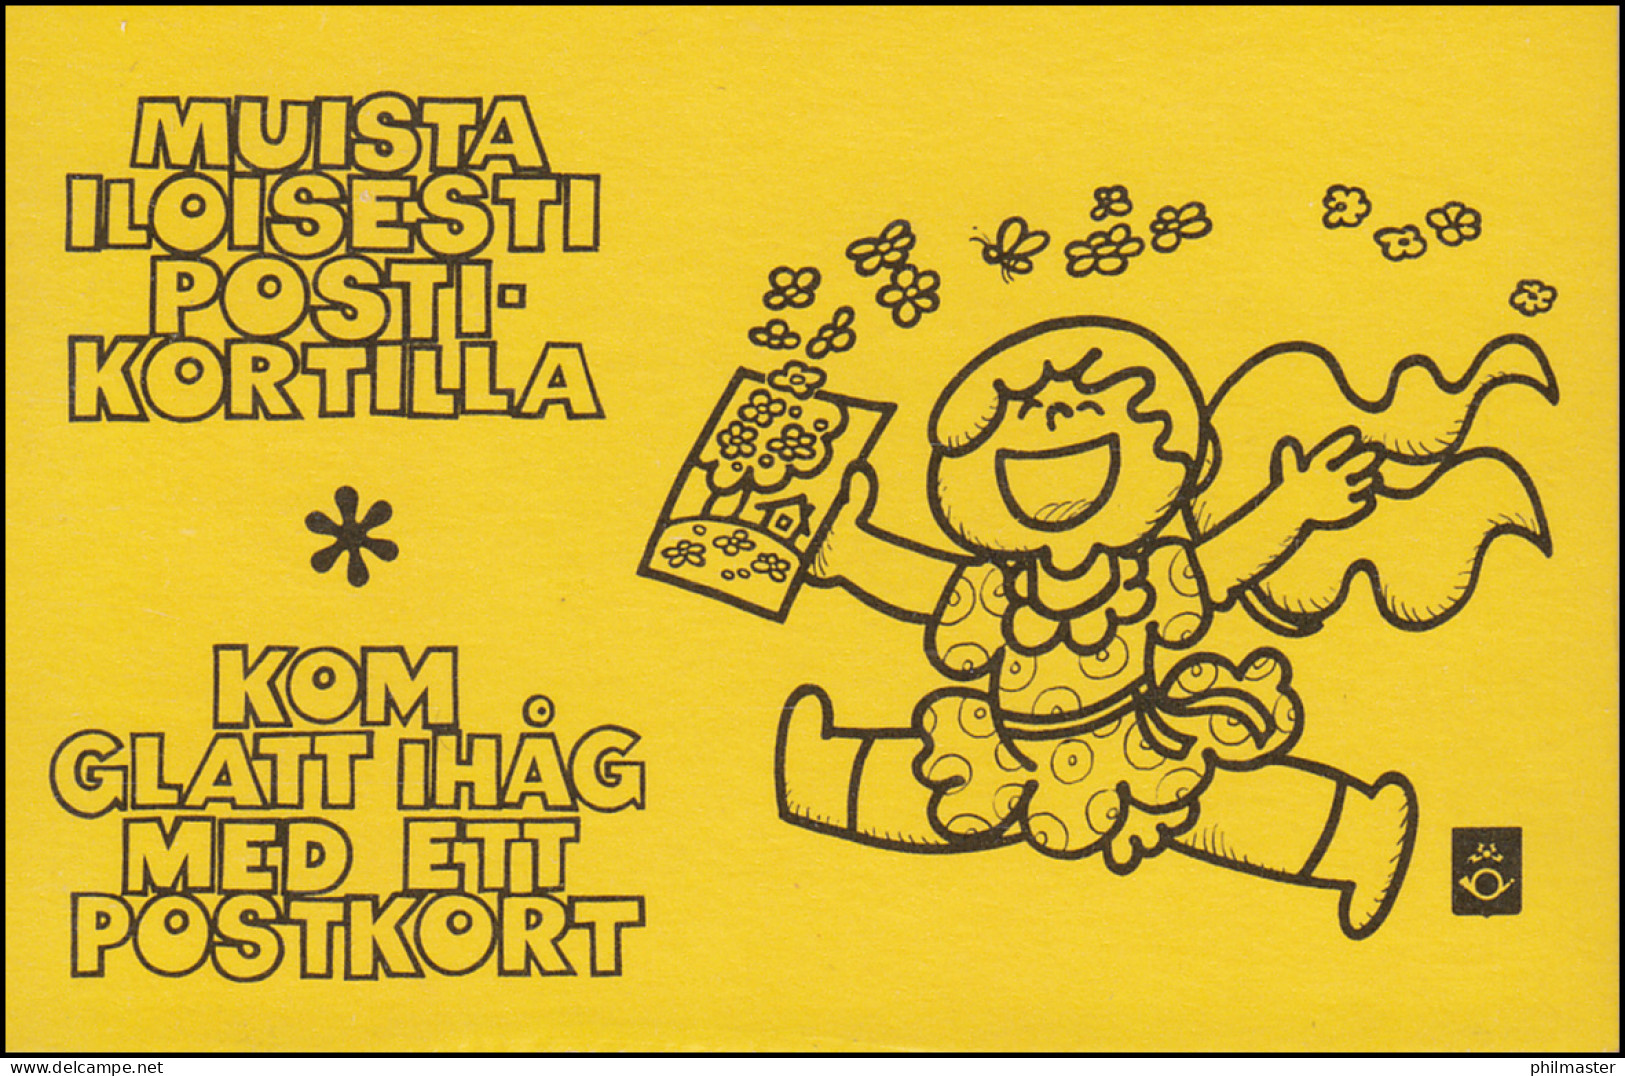 Finnland Markenheftchen 10I Staatswappen 1978, ** Postfrisch - Booklets